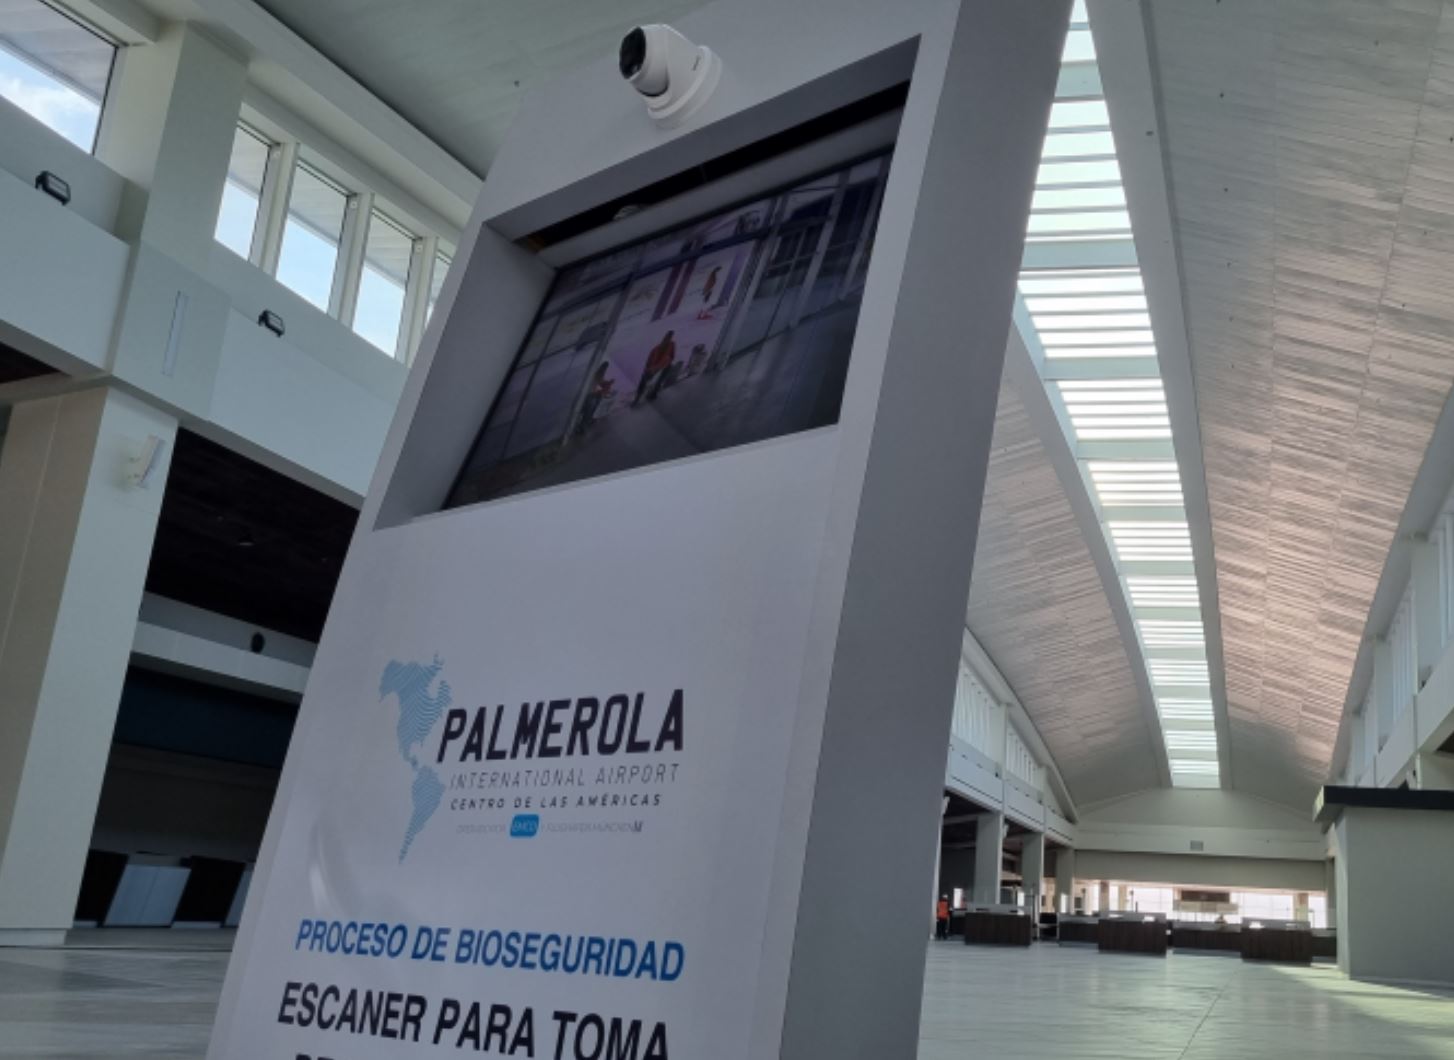 Palmerola solo espera que otorguen permiso a aerolíneas en EEUU para iniciar vuelos